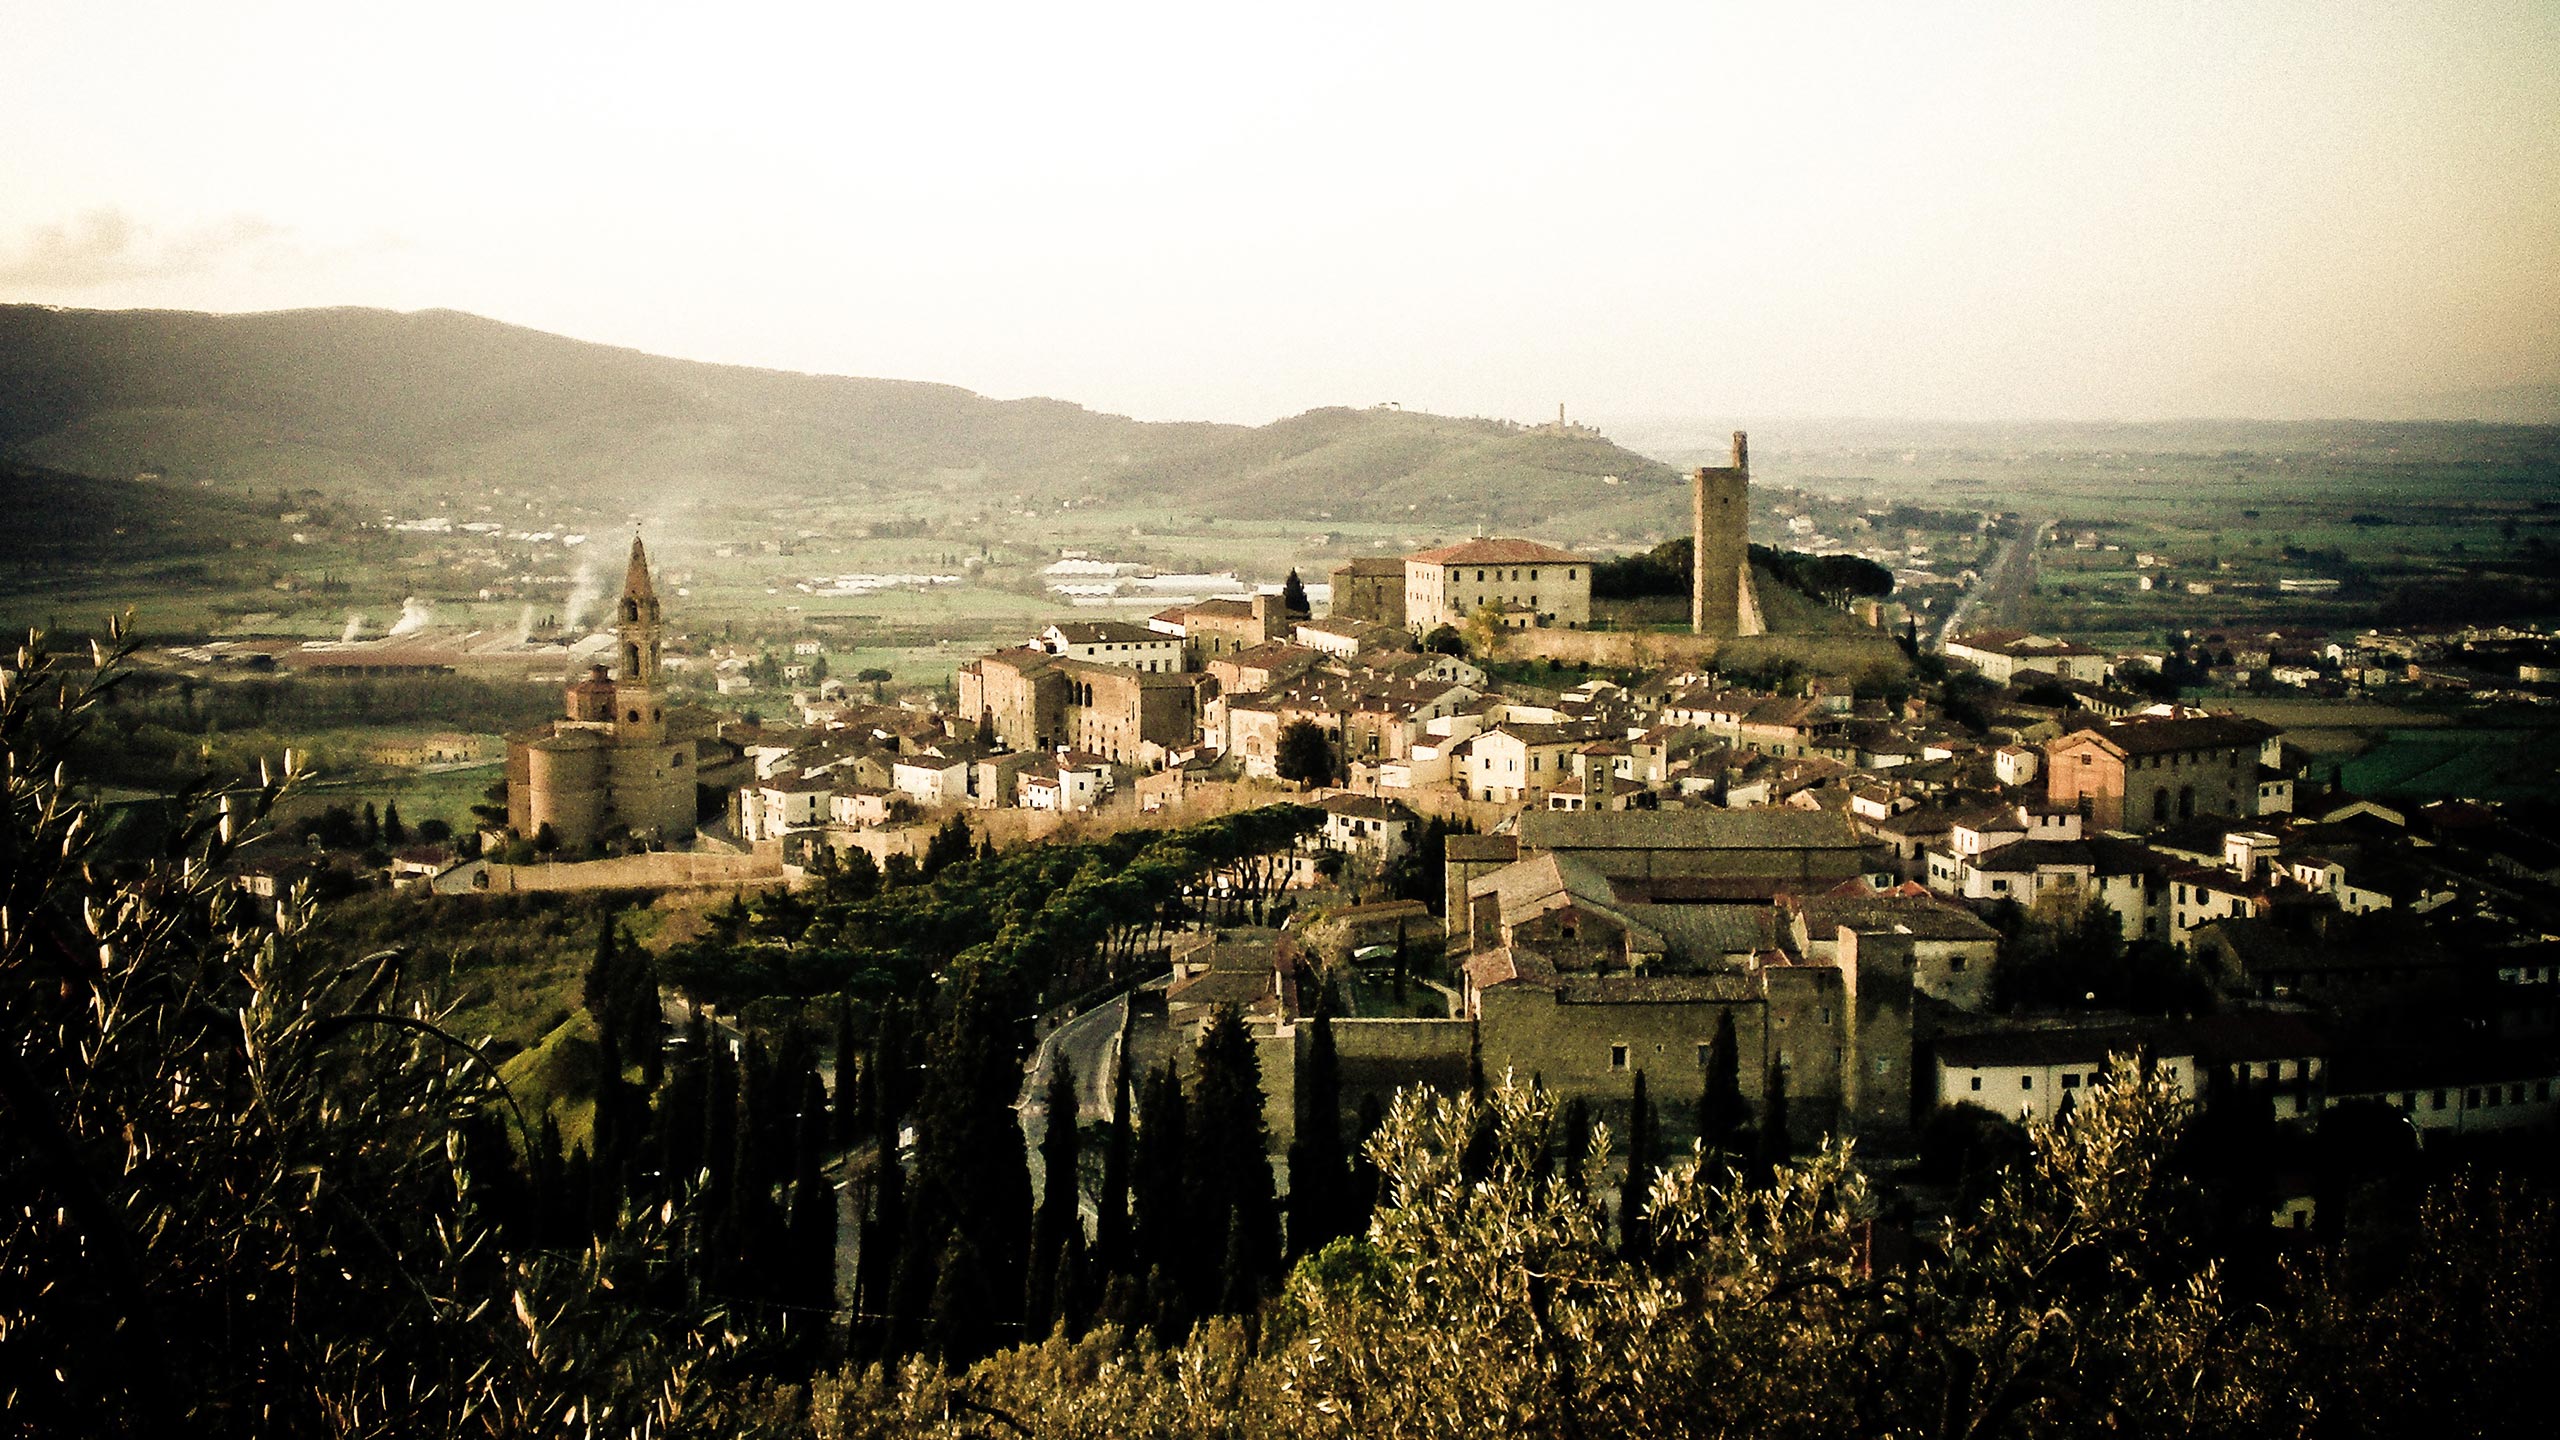 Hilltop view of the Italian town Castiglion Fiorentino